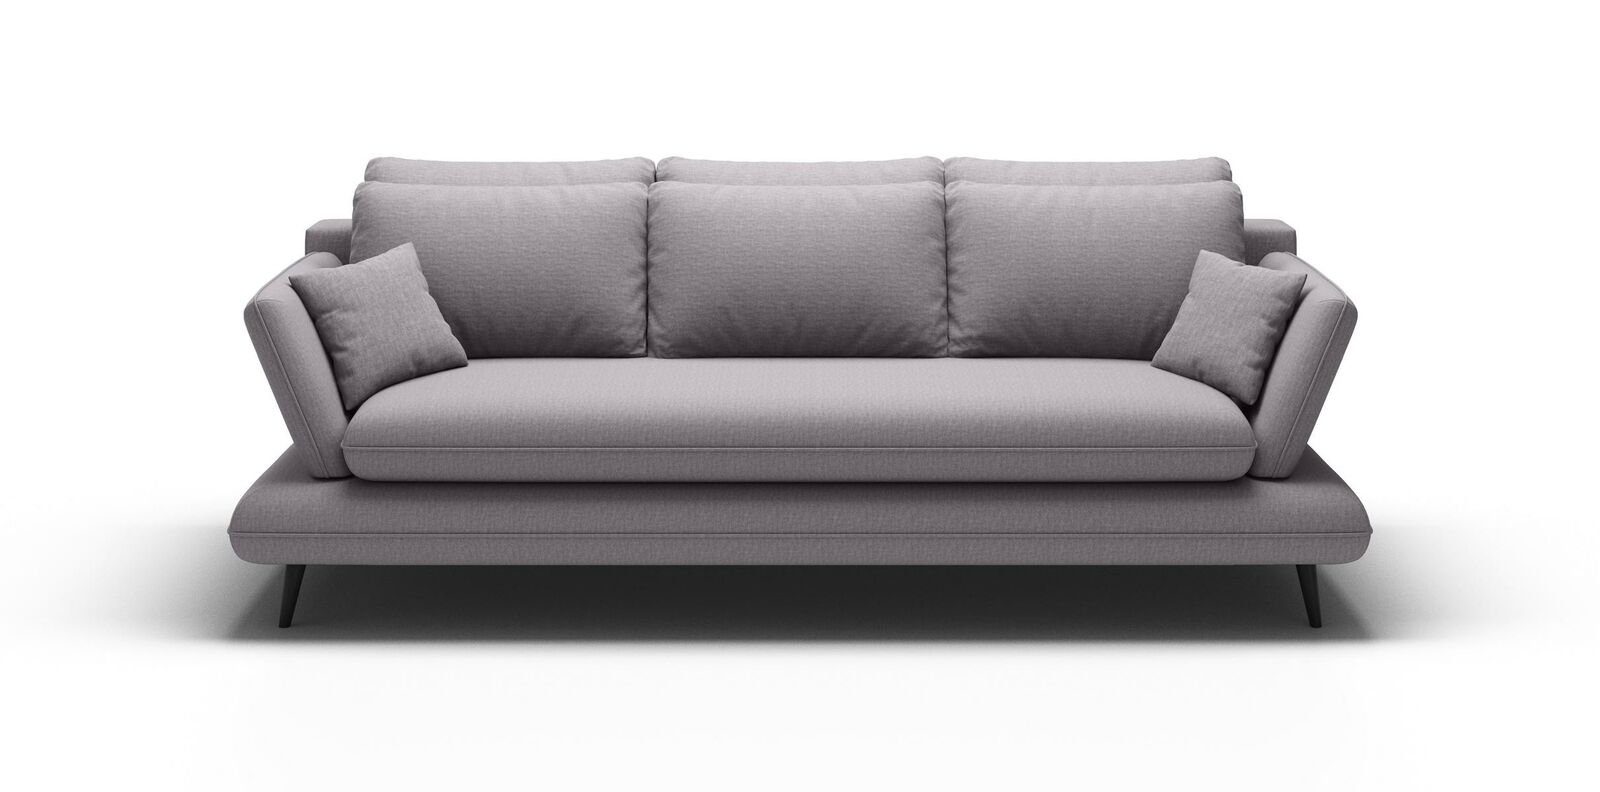 JVmoebel Chesterfield-Sofa Luxus Grauer Dreisitzer moderne 3-Sitzer Couch stilvoll Neu, Made in Europe